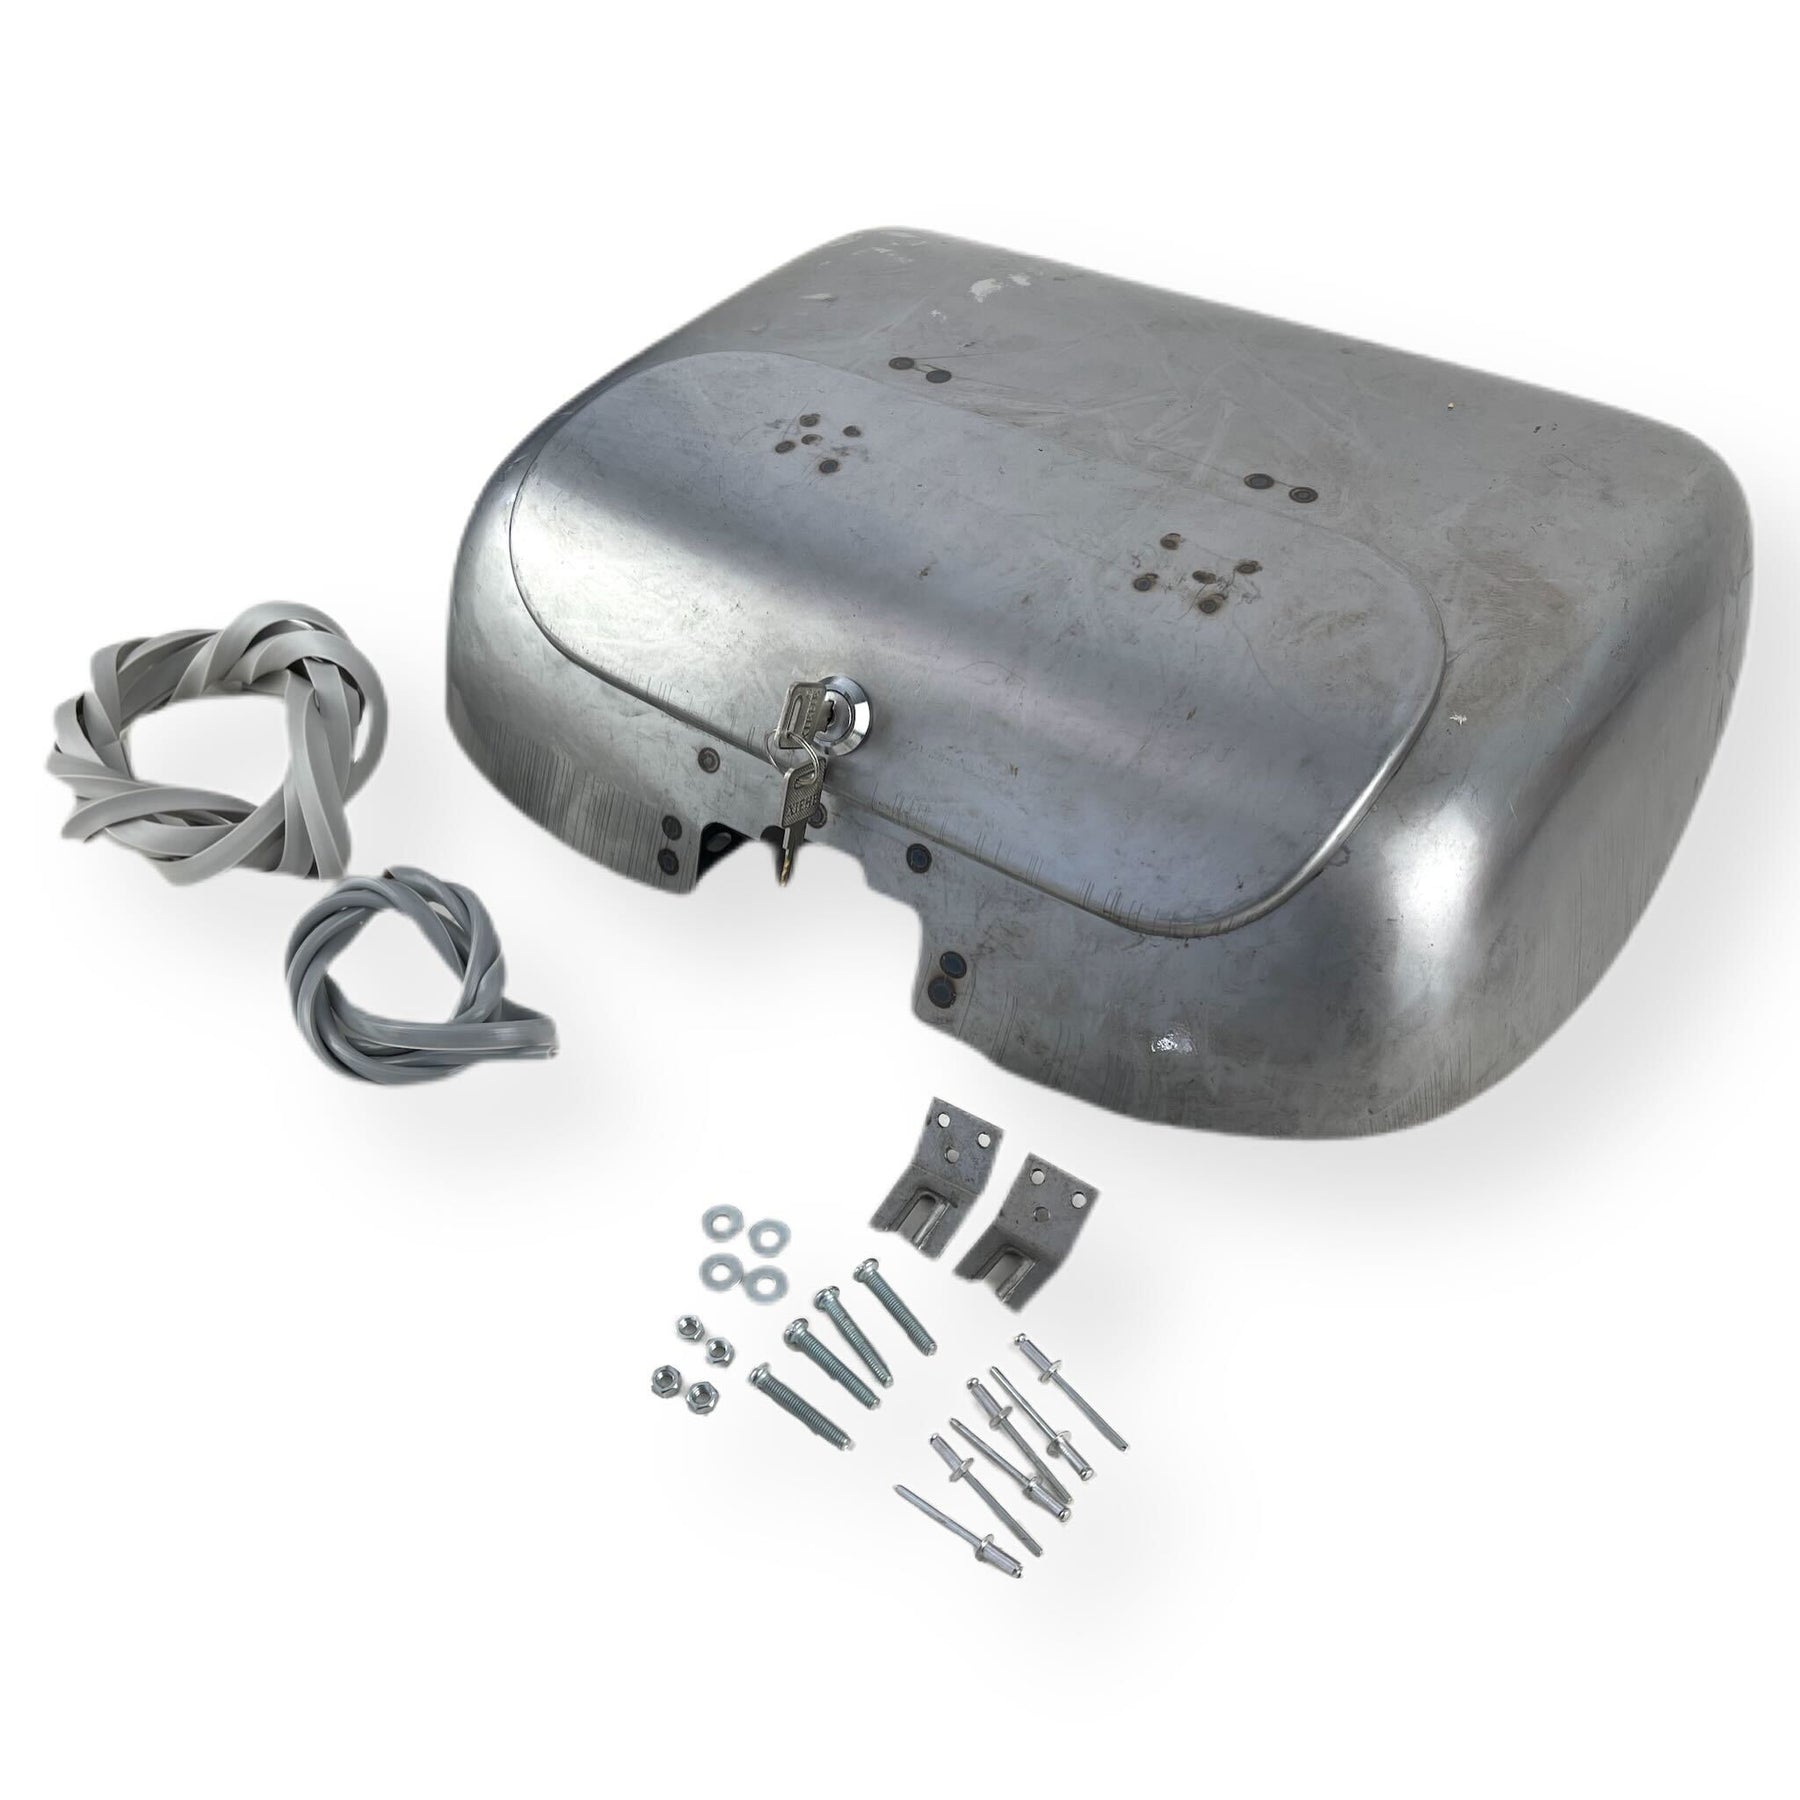 Lambretta GP DL Inside Leg Shield Tool Box ULMA Nanucci - Bare Metal